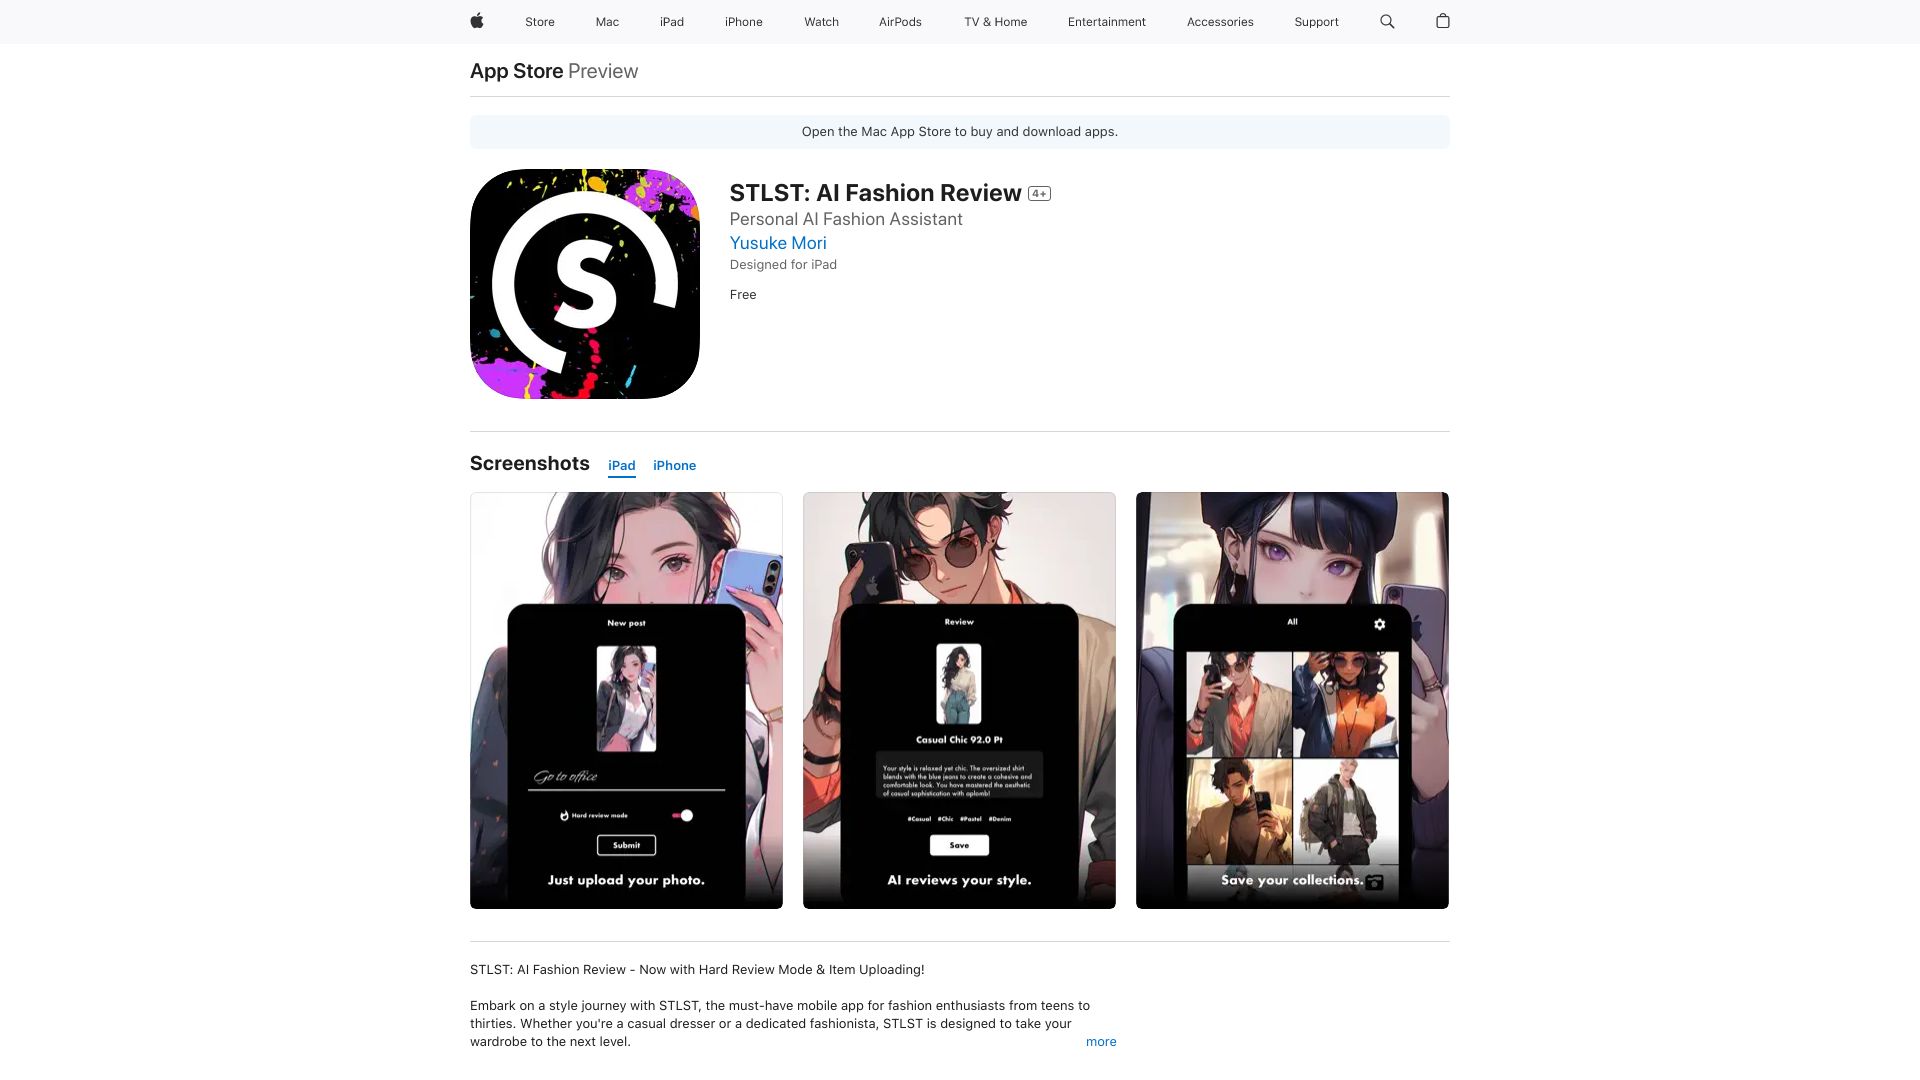 STLST: AI Fashion Review